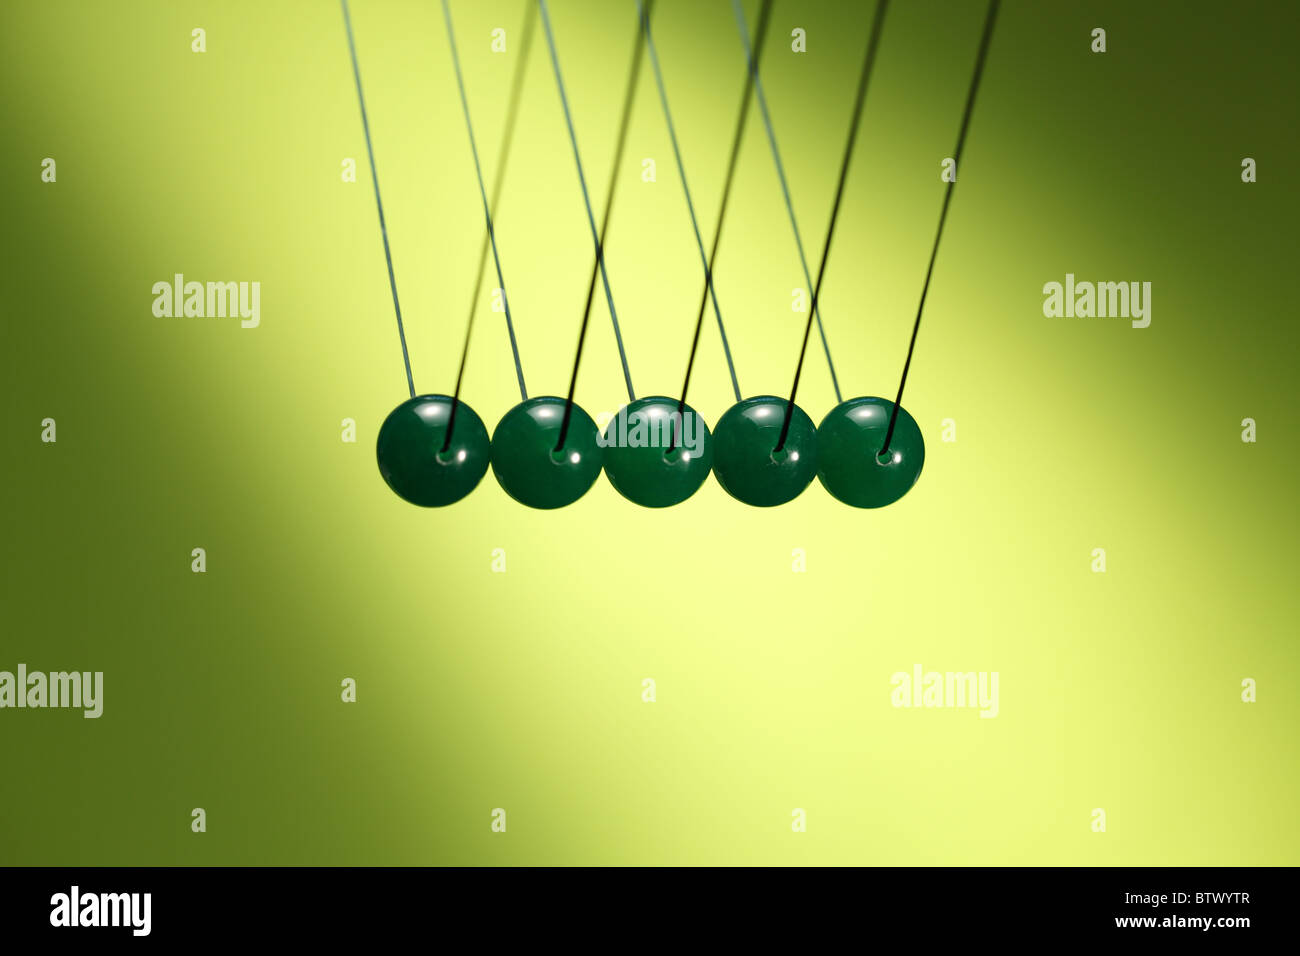 Cinq billes vertes dans la rangée suspendu à chaîne. Newton's cradle, illustre un appareil qui démontre la conservation de l'impulsion. Banque D'Images